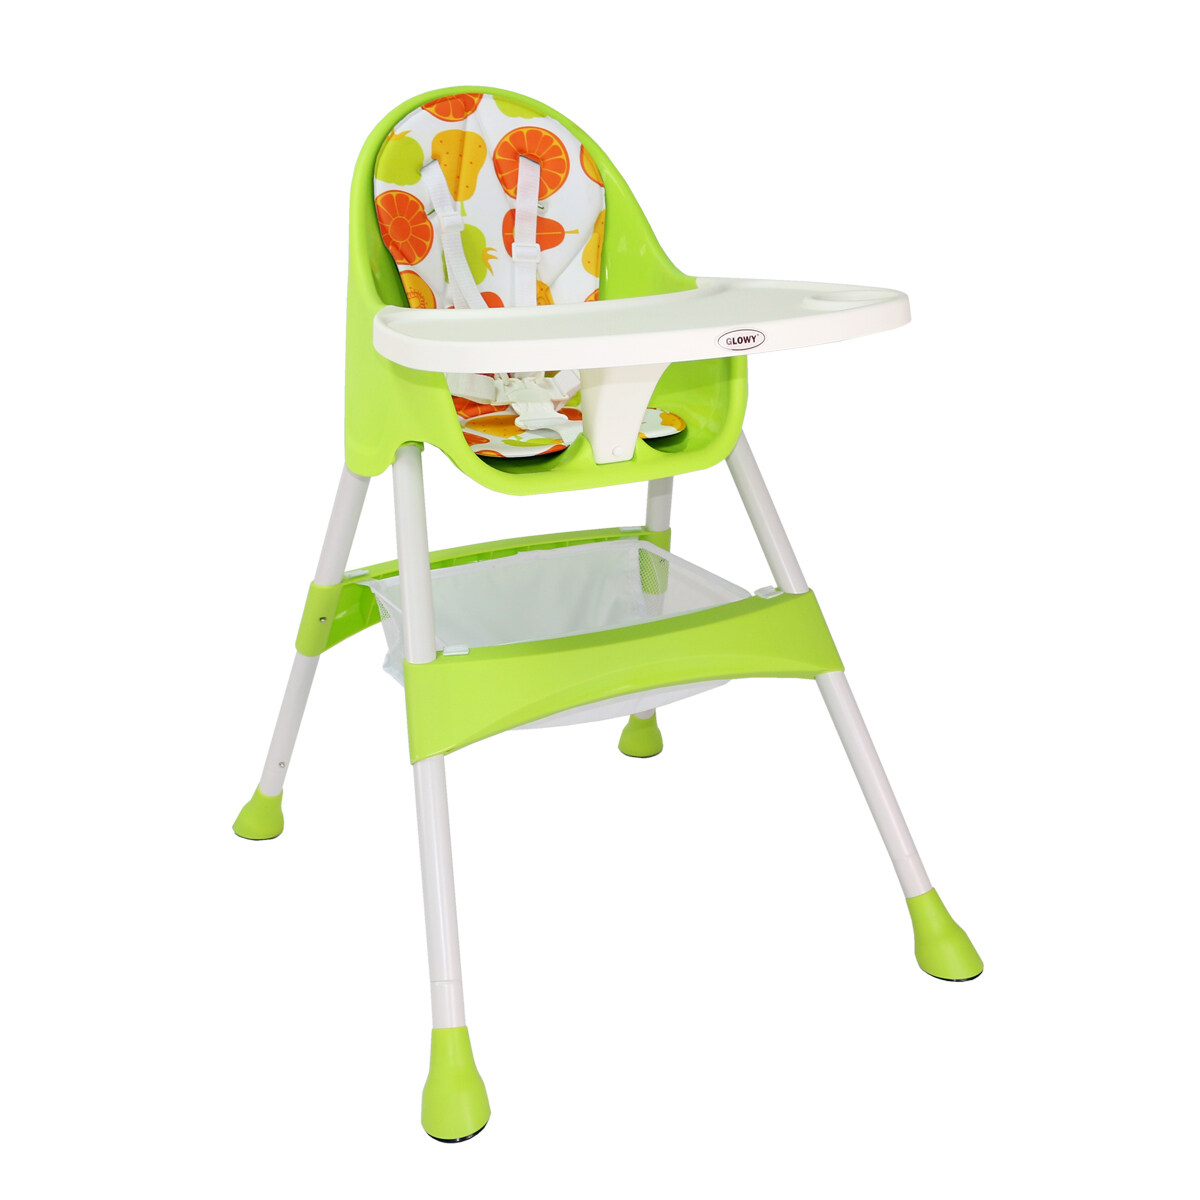 ราคา Glowy Candy Plus High Chair - Apple Green